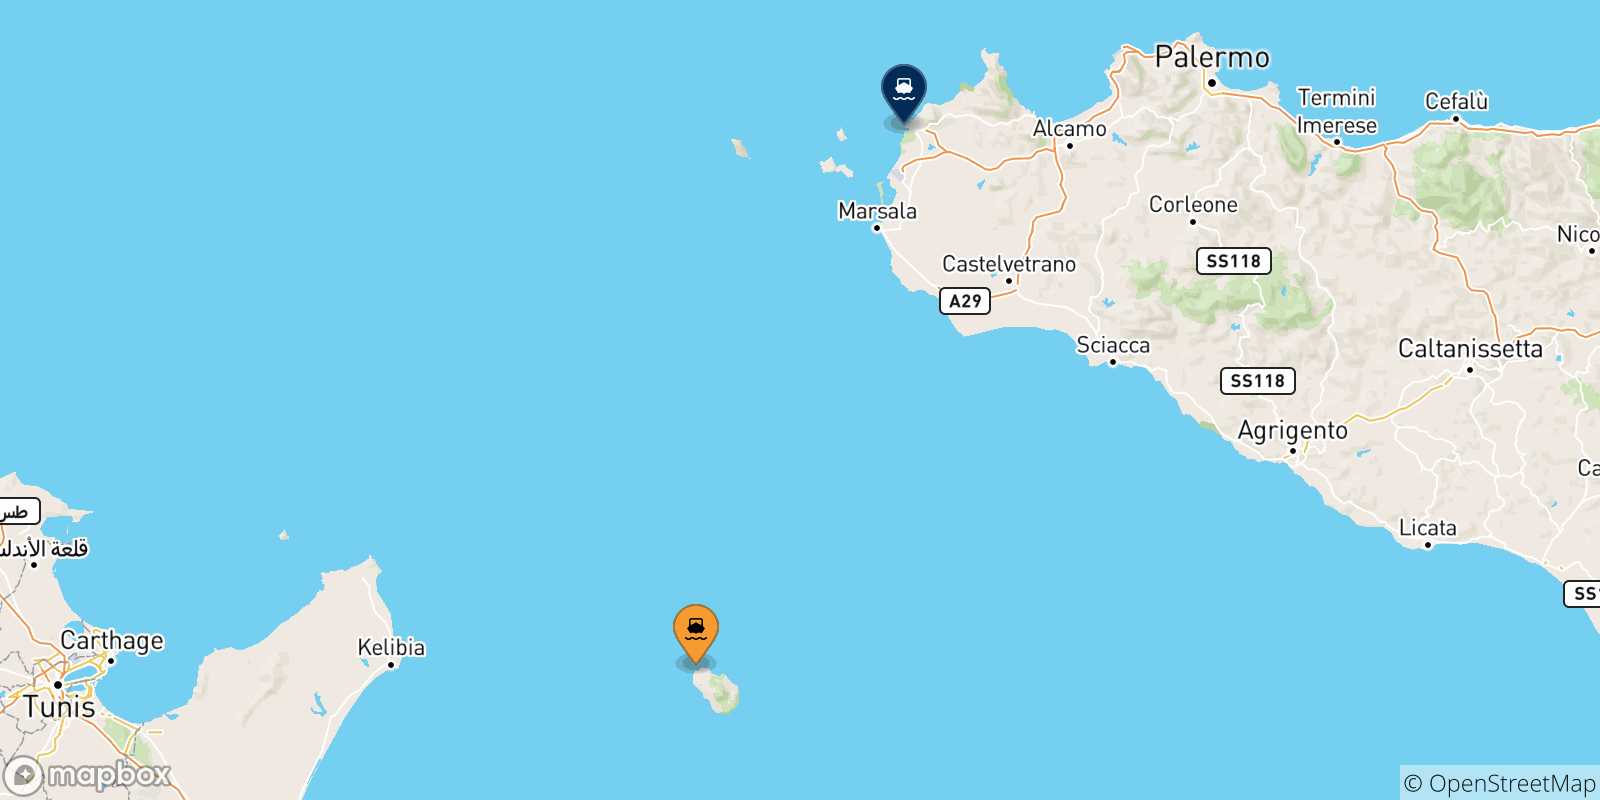 Mappa delle possibili rotte tra Pantelleria e l'Italia